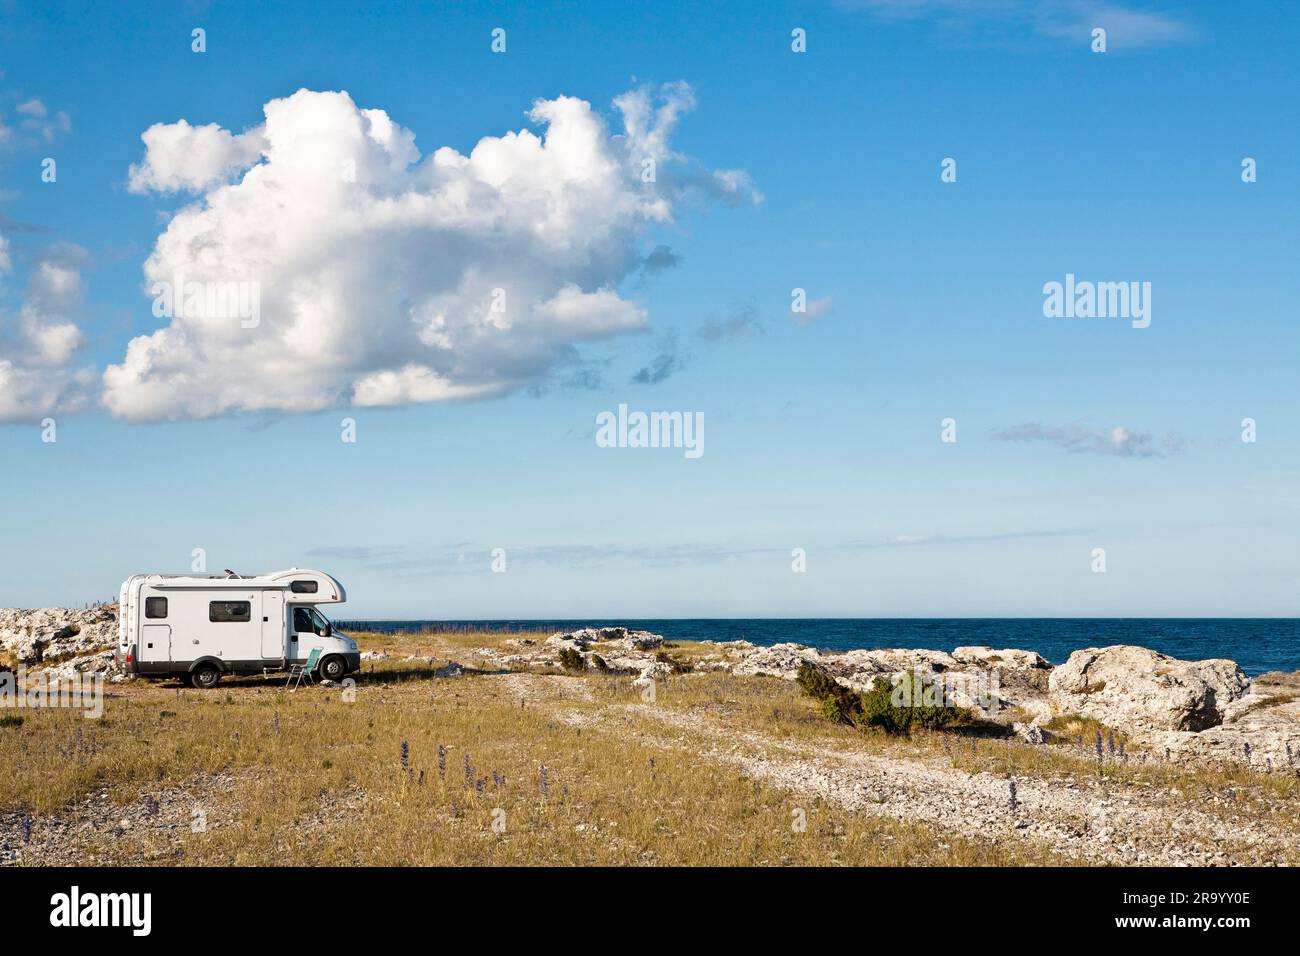 Seitenansicht eines Wohnwagens, das am Strand am Meer unter Wolken am Himmel zeltet. Gotland Island, Schweden. Stockfoto